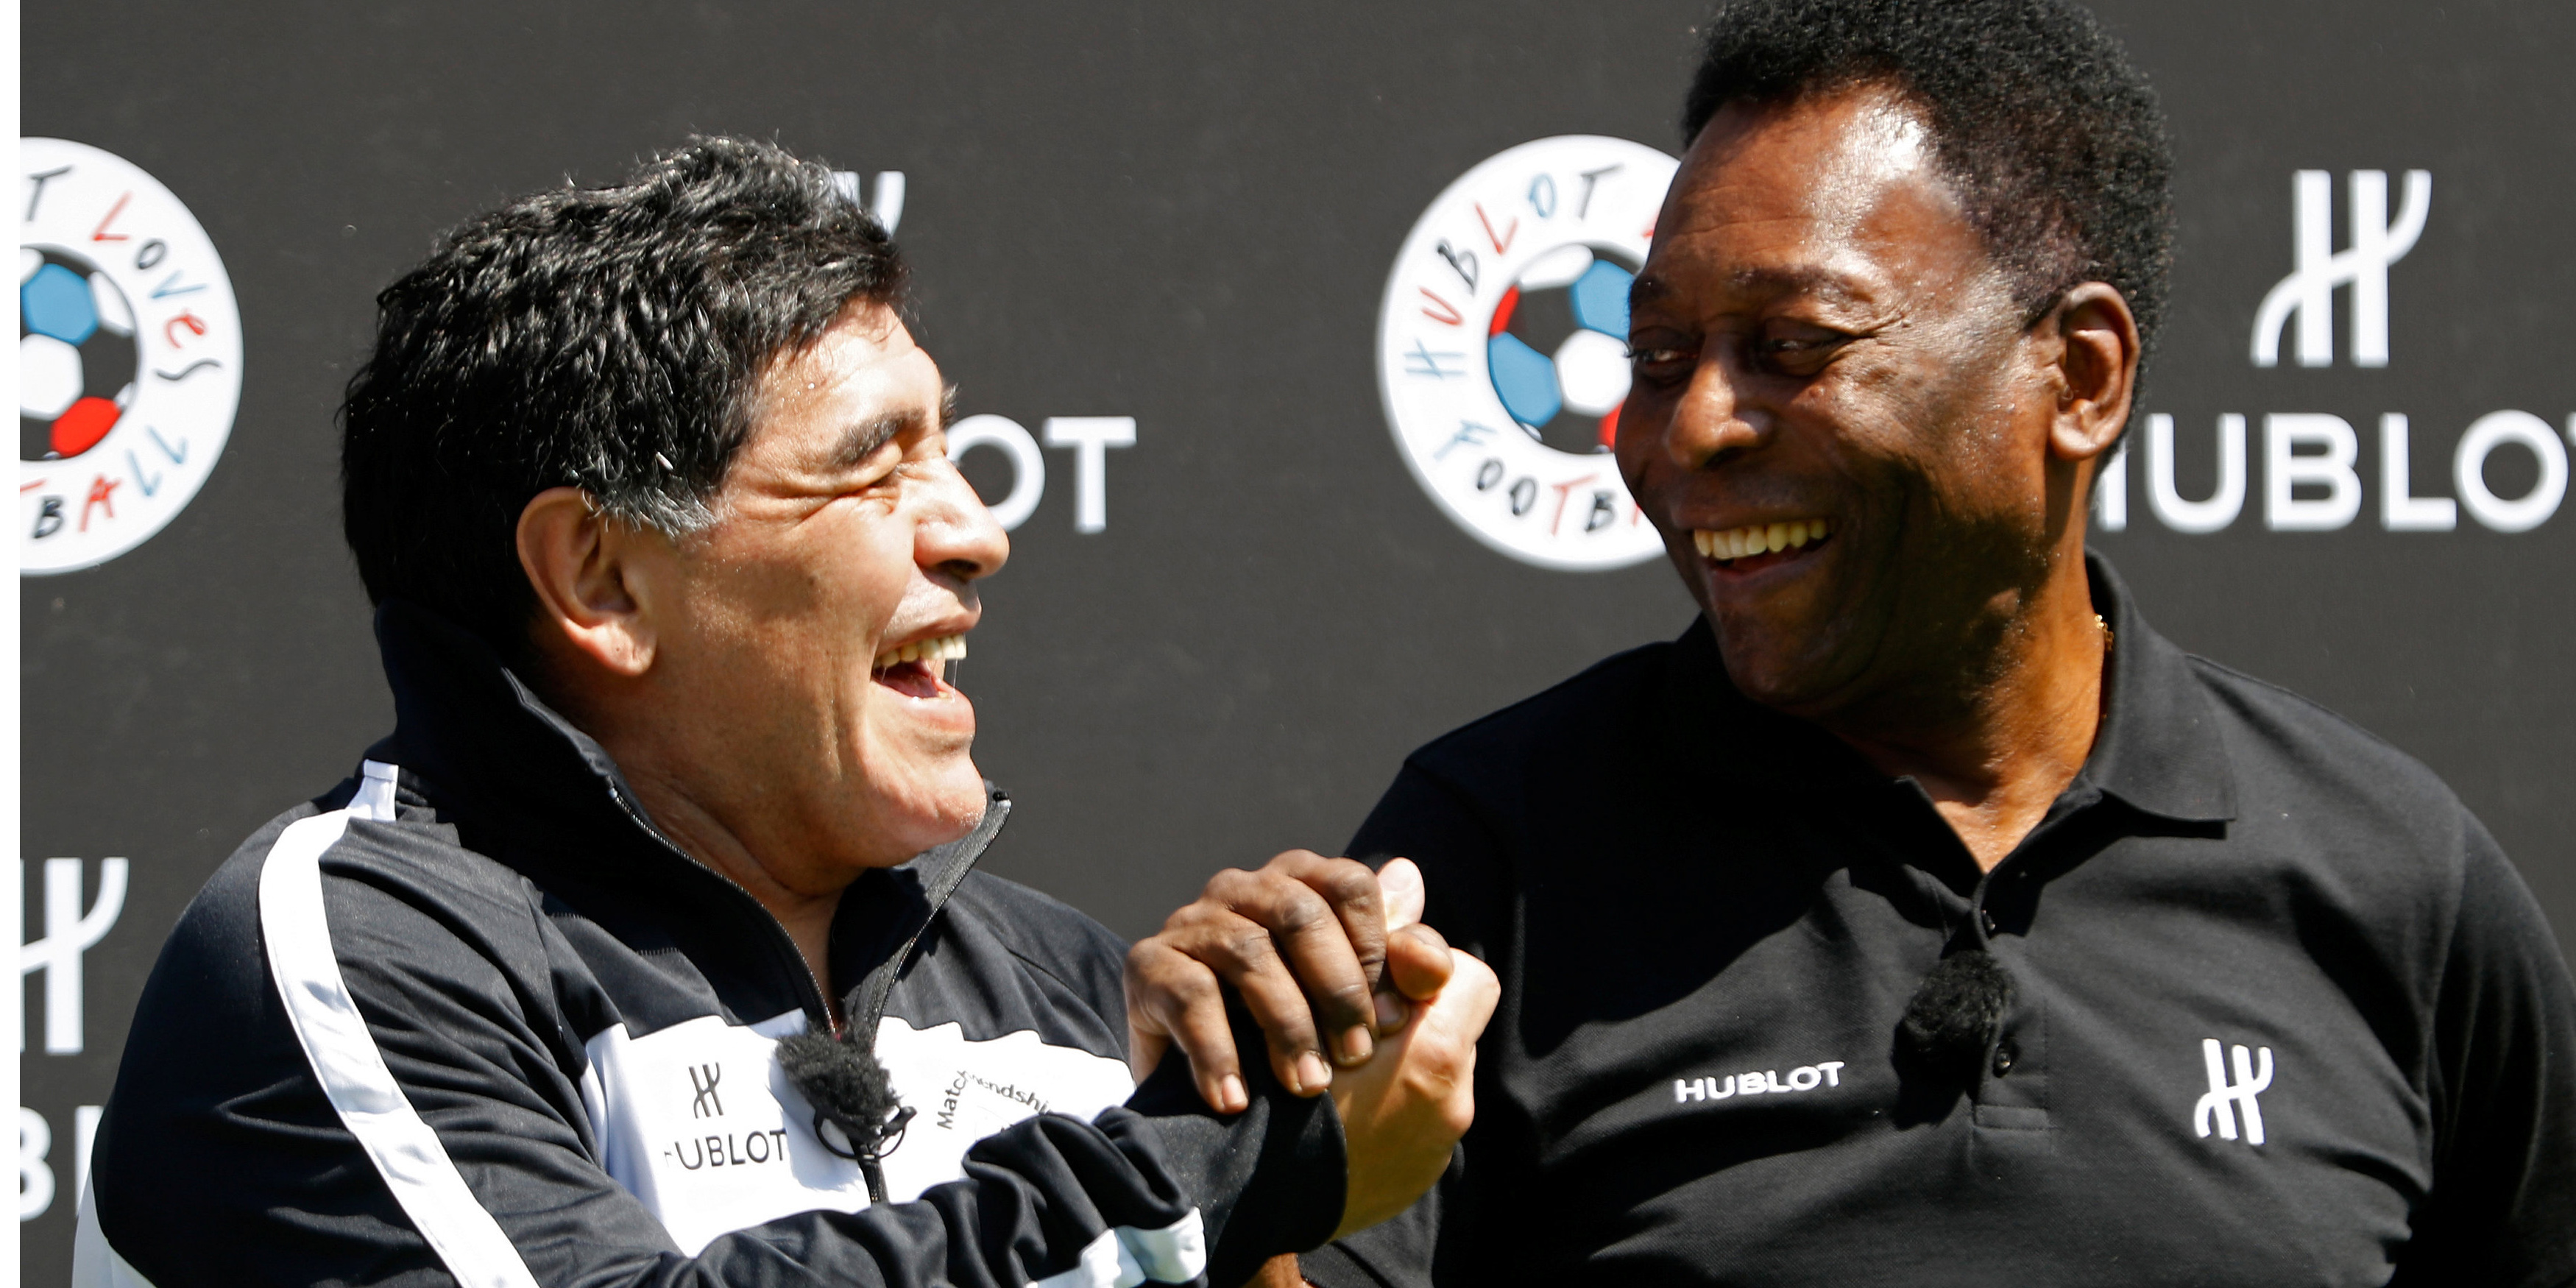 Por primera vez en años, Pelé y Maradona dejaron atrás sus conflictos y se reunieron públicamente.